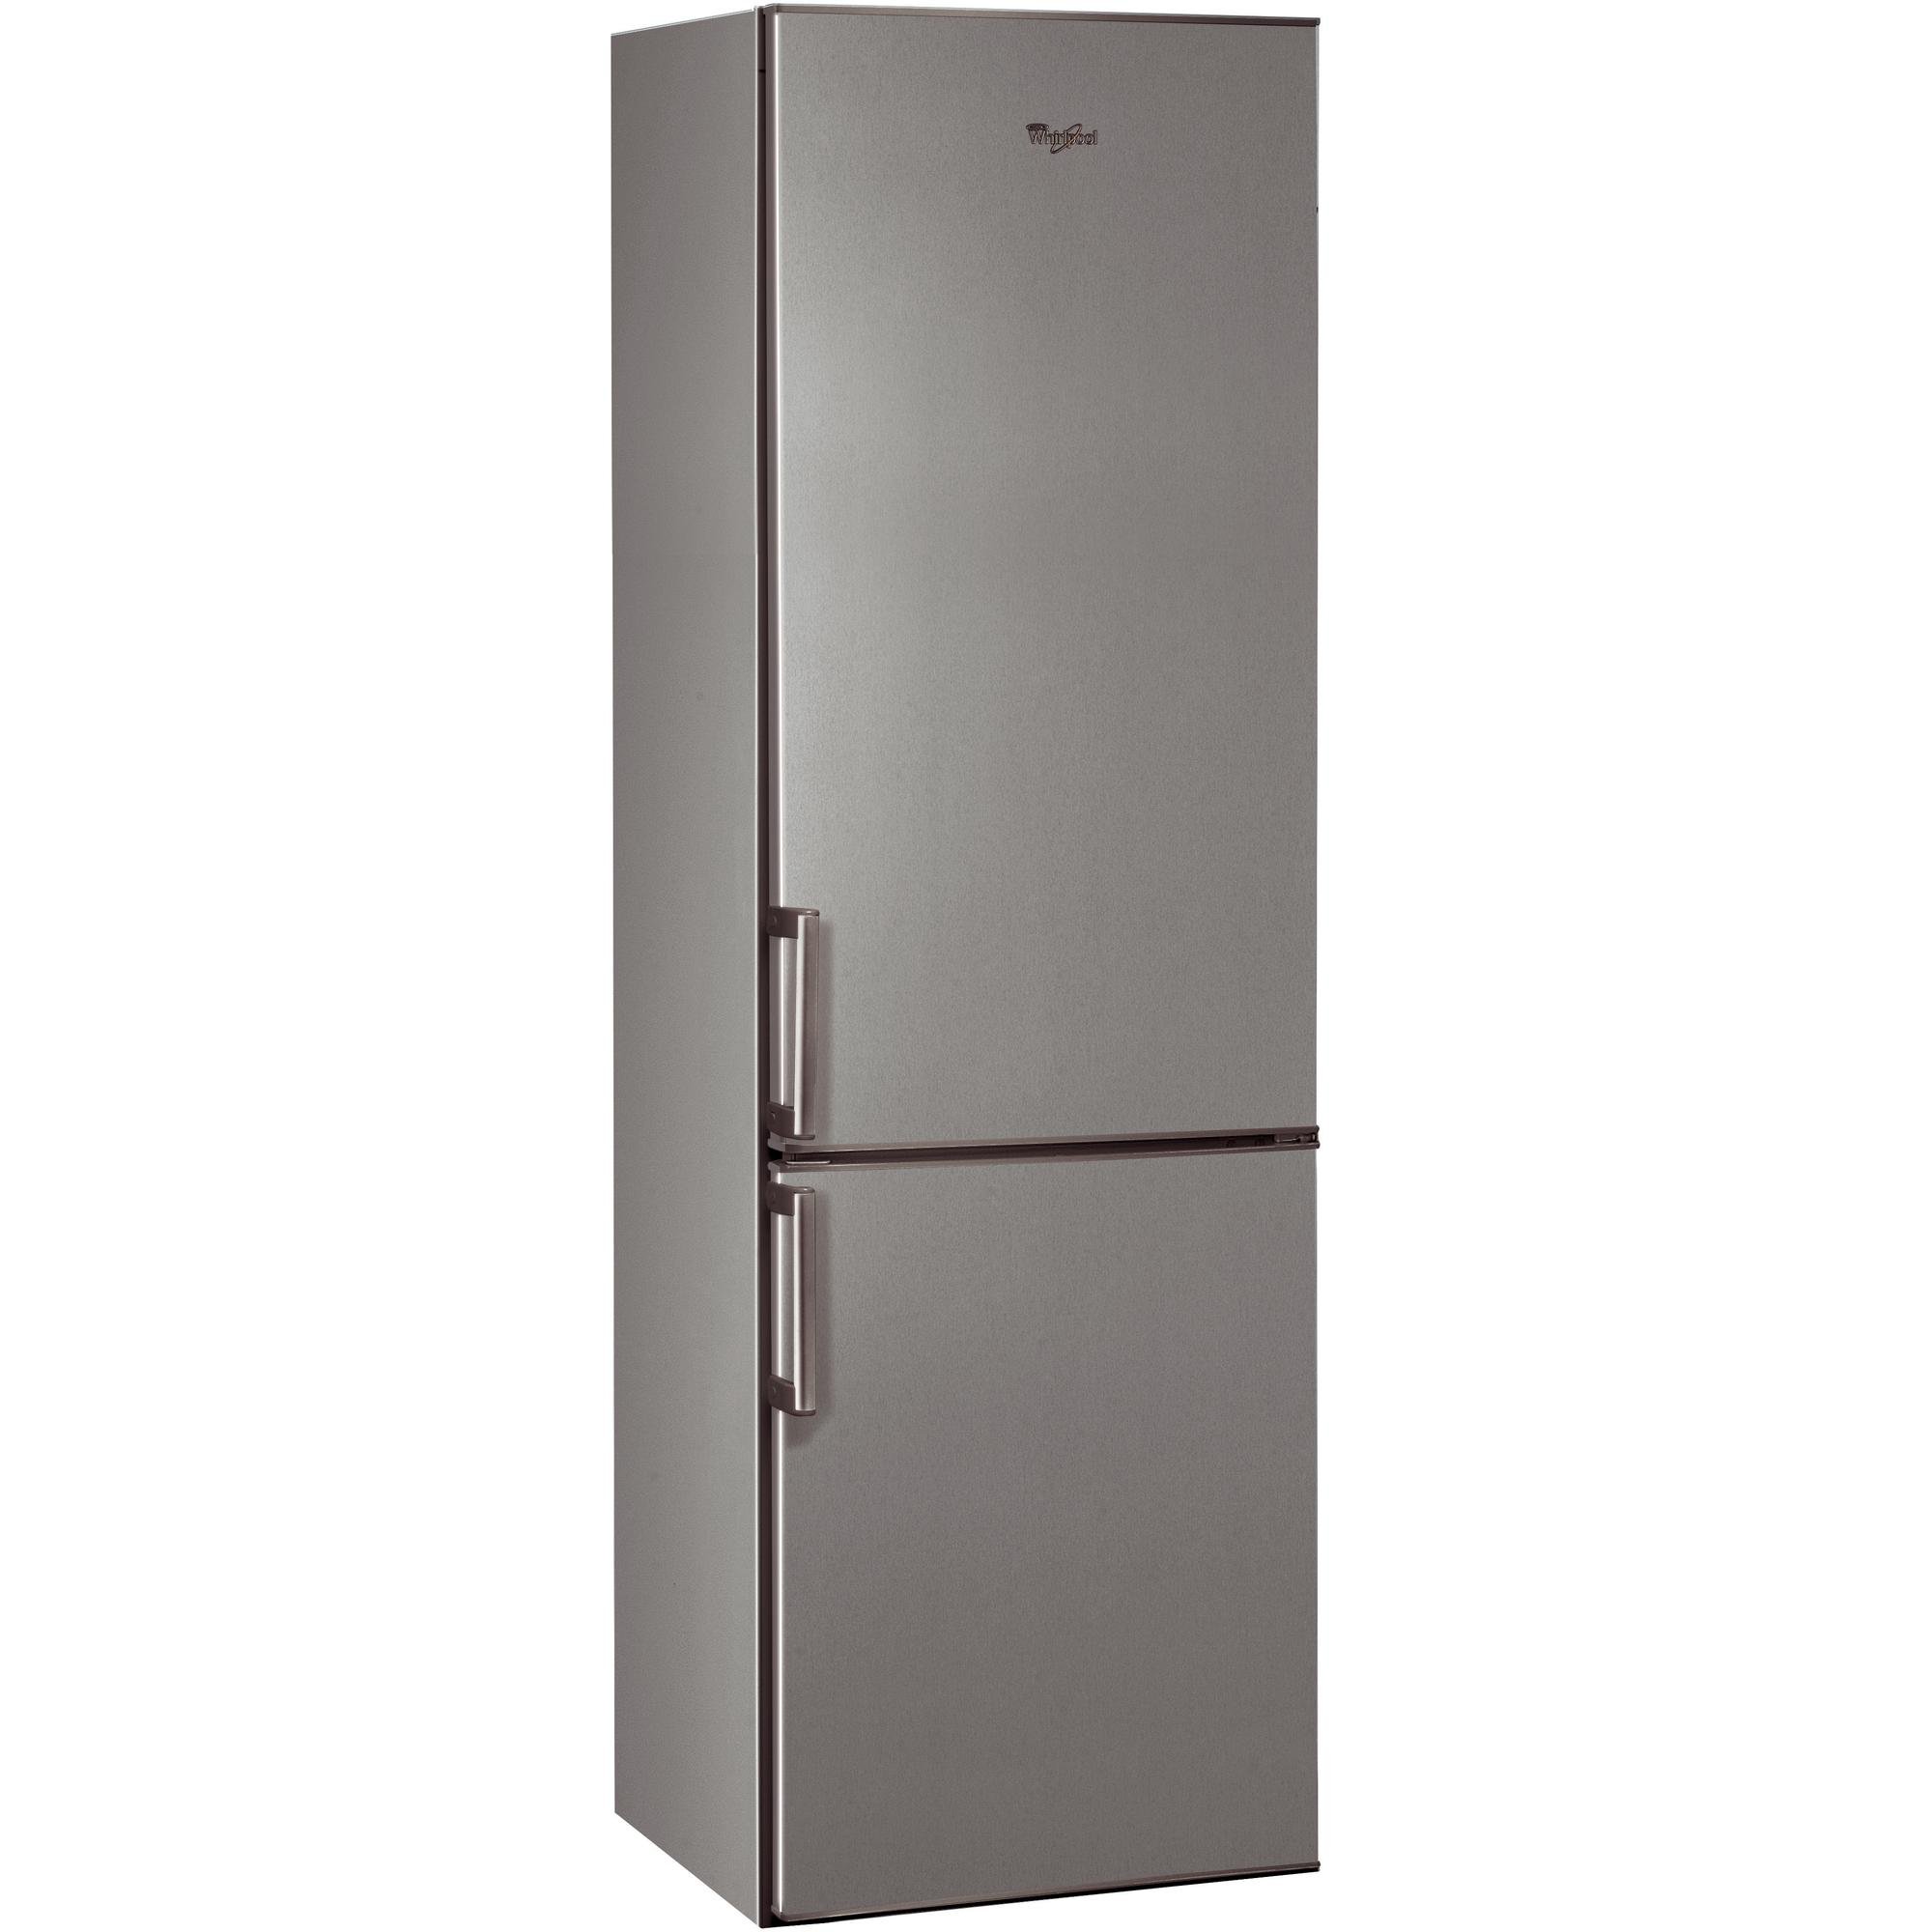 Холодильник двухкамерный купить в москве цена. Холодильник Vestfrost VF 185 ex. Холодильник Candy CBSA 6200 X. Vestfrost VF 3863 H. Холодильник Whirlpool BSFV 9152 Ox.